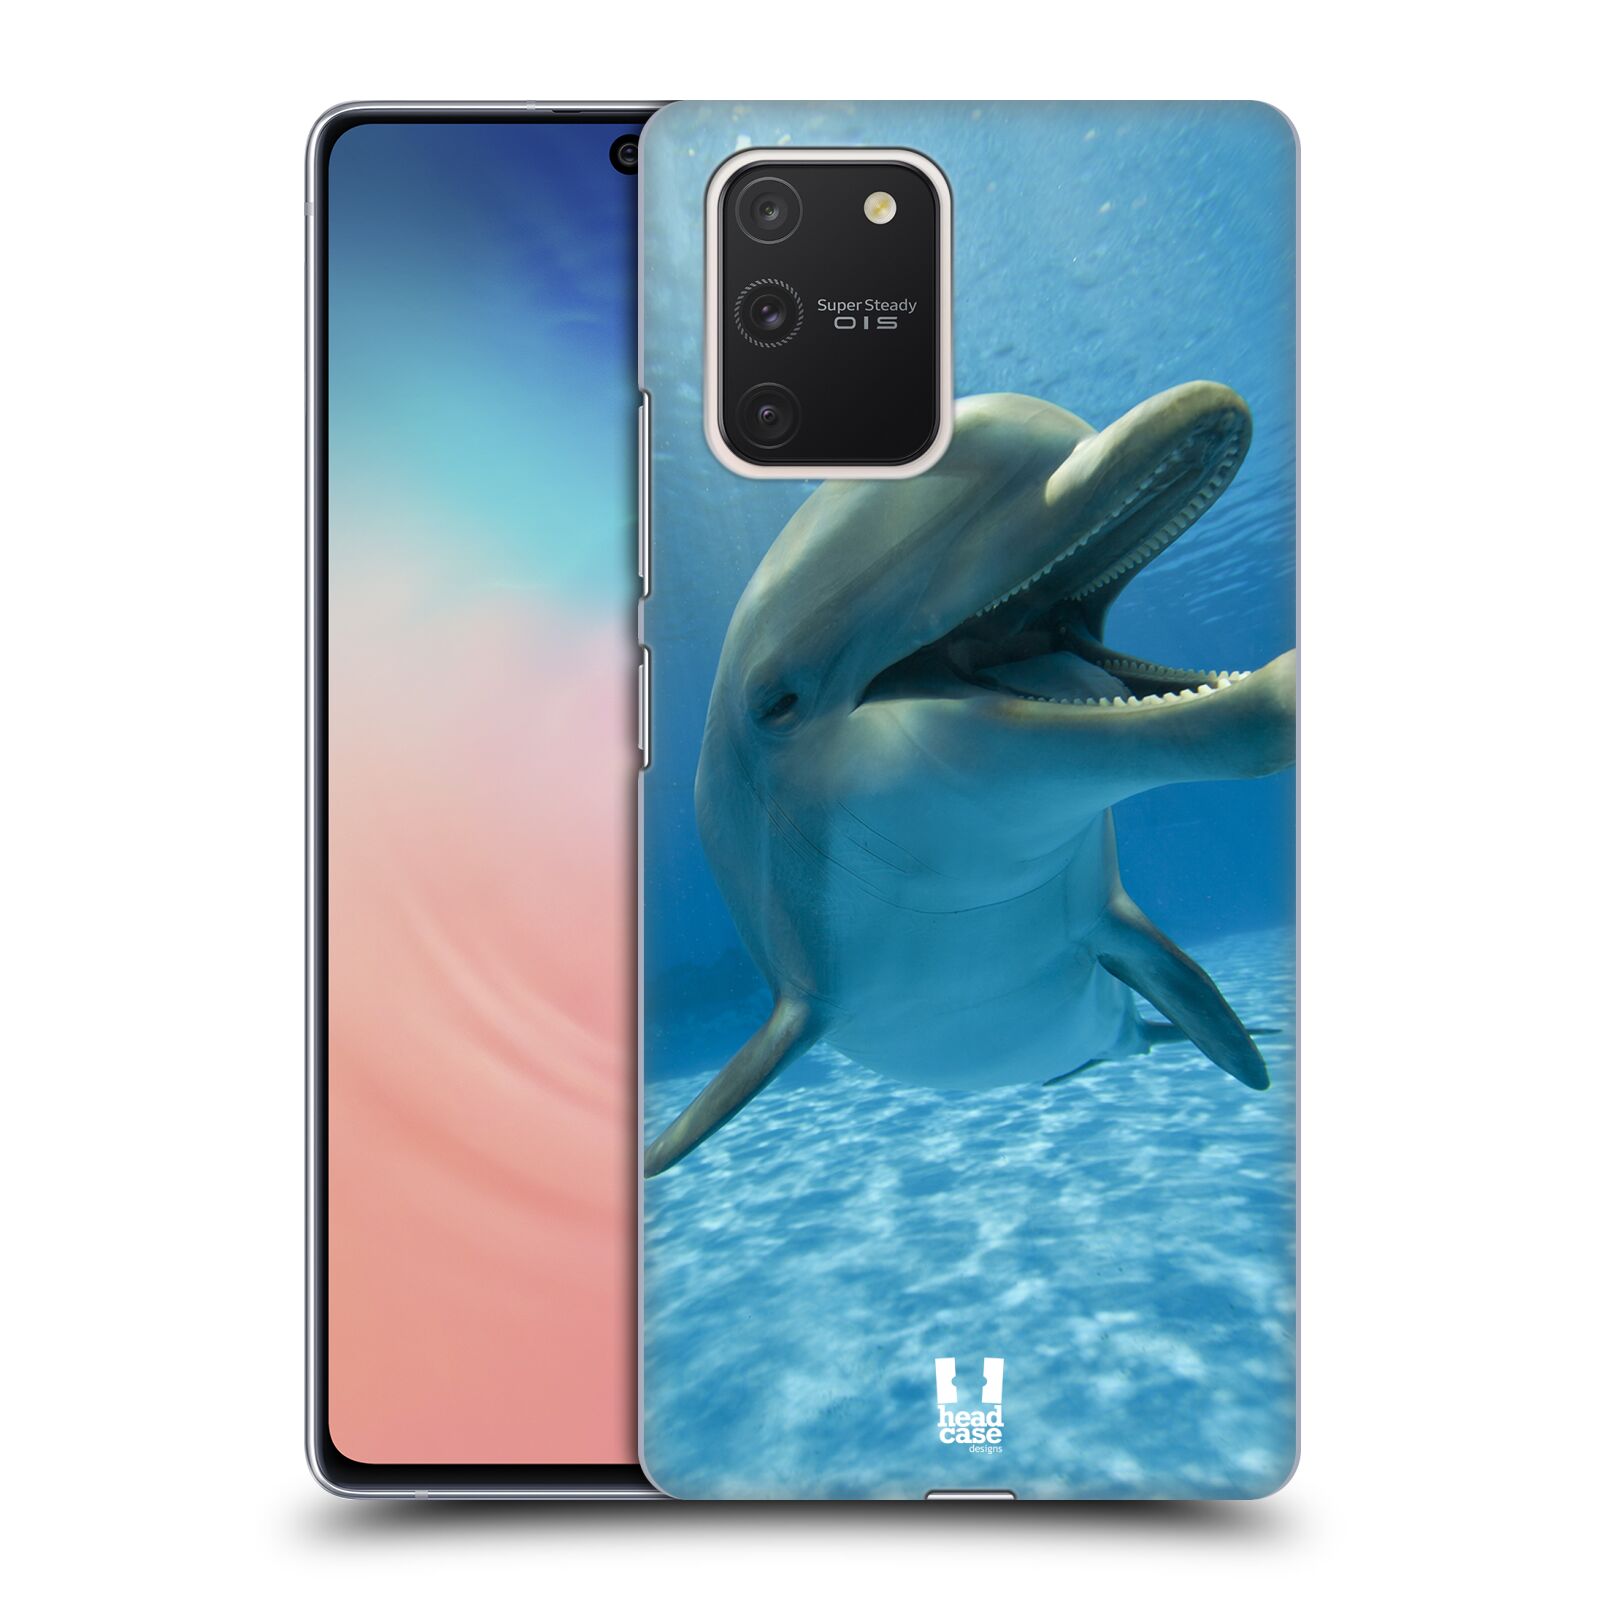 Zadní obal pro mobil Samsung Galaxy S10 LITE - HEAD CASE - Svět zvířat delfín v moři